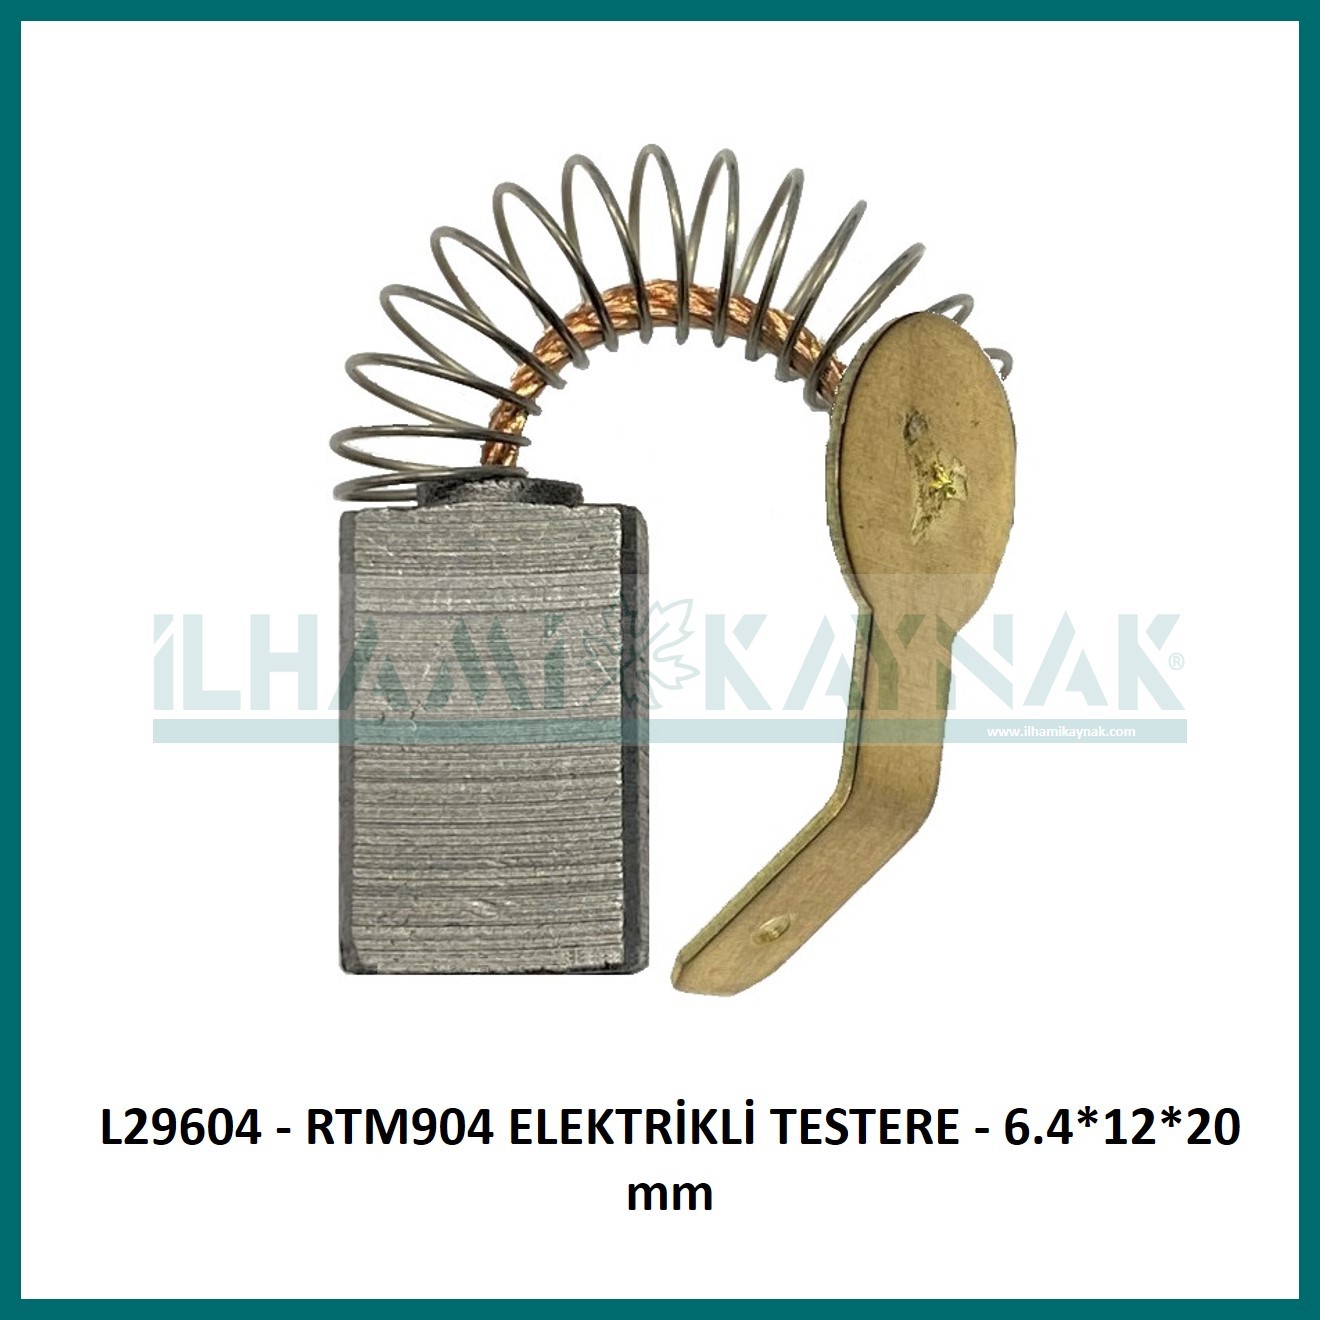 L29604 - RTM904 ELEKTRİKLİ TESTERE - 6.4*12*20 mm - Minimum Satın Alım: 10 Adet